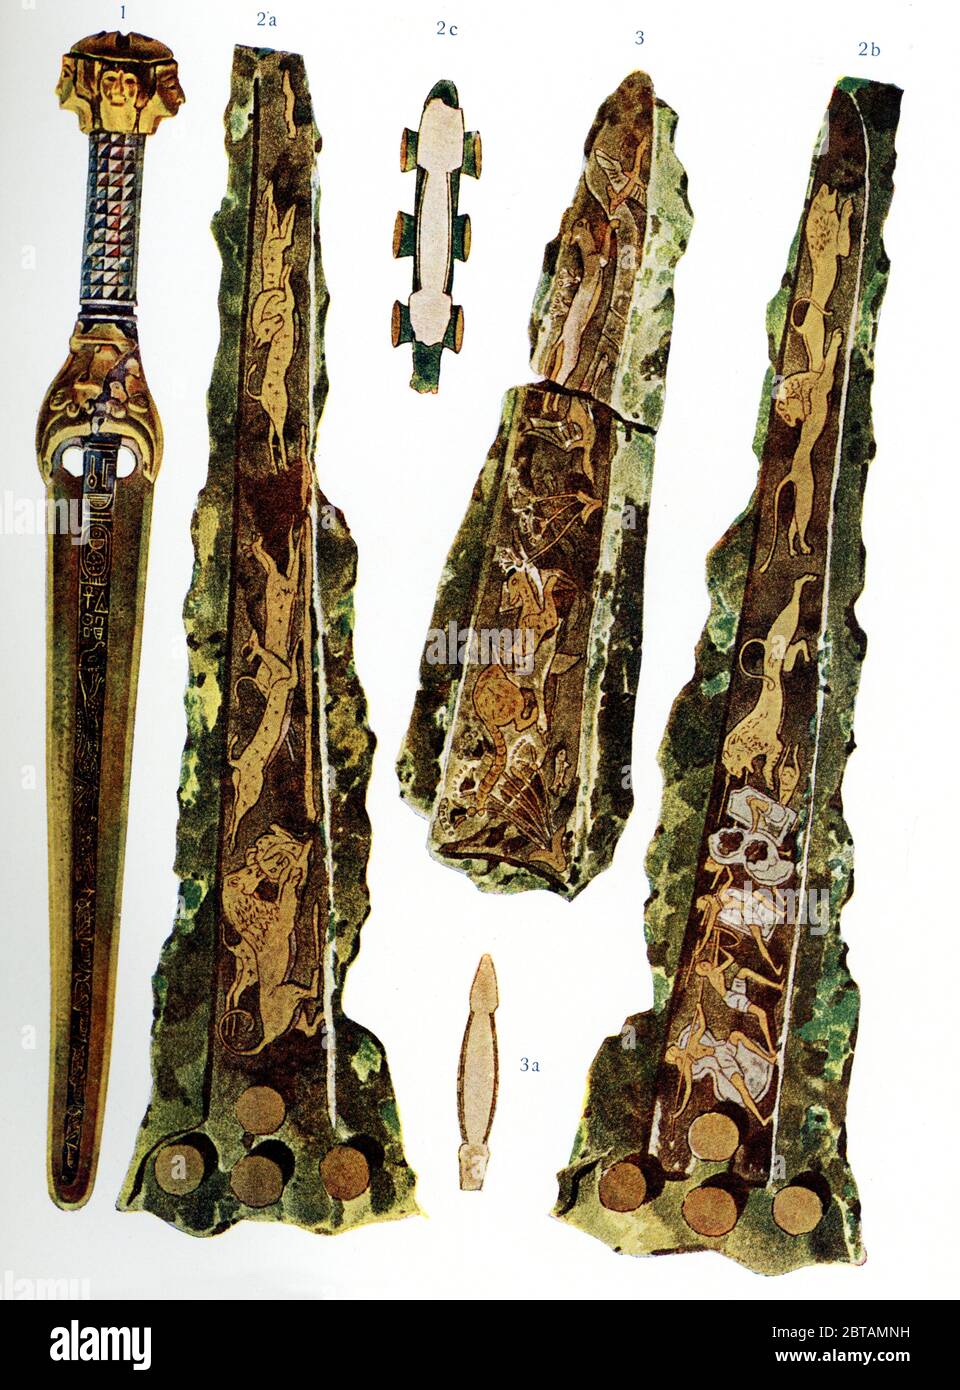 Questa illustrazione mostra pugnali dell'antico Egitto (1) e della tarda età del bronzo città greca di Micene (2 e 3) con disegni intarsiati. Queste sono le illustrazioni dei primi anni del 1900 di ritrovamenti scoperti. Foto Stock